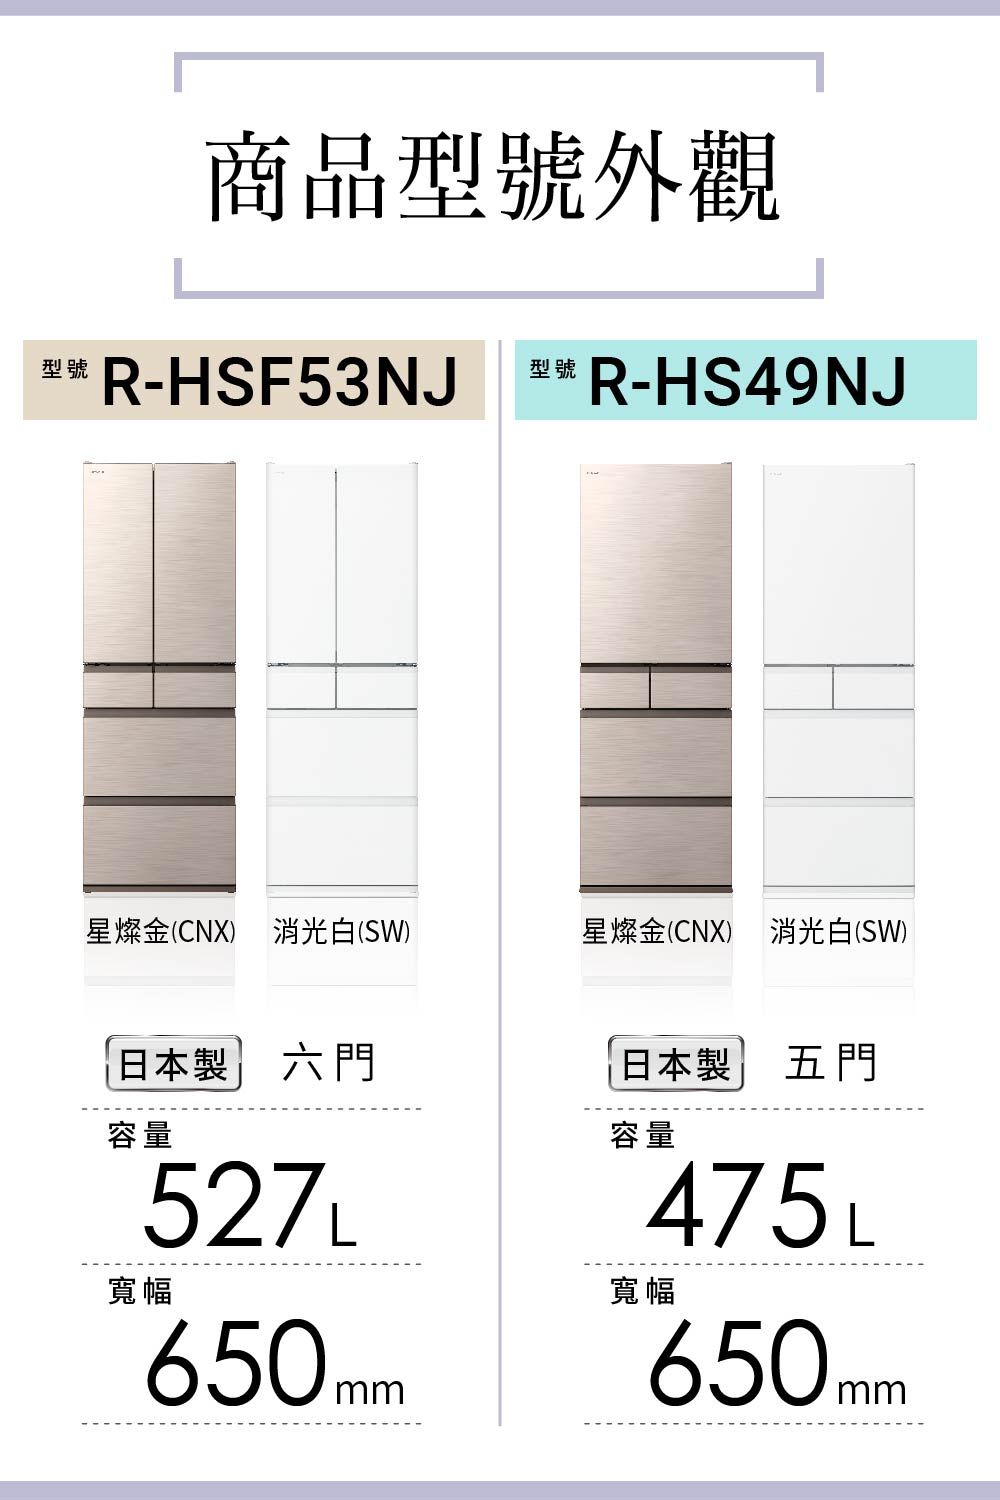 商品型號外觀型號R-HSF53NJ型號R-HS49NJ星燦金(CNX)消光白(SW)星燦金(CNX) 消光白(SW)日本製 六門日本製 五門容量寬幅527L650mm容量寬幅475L650mm